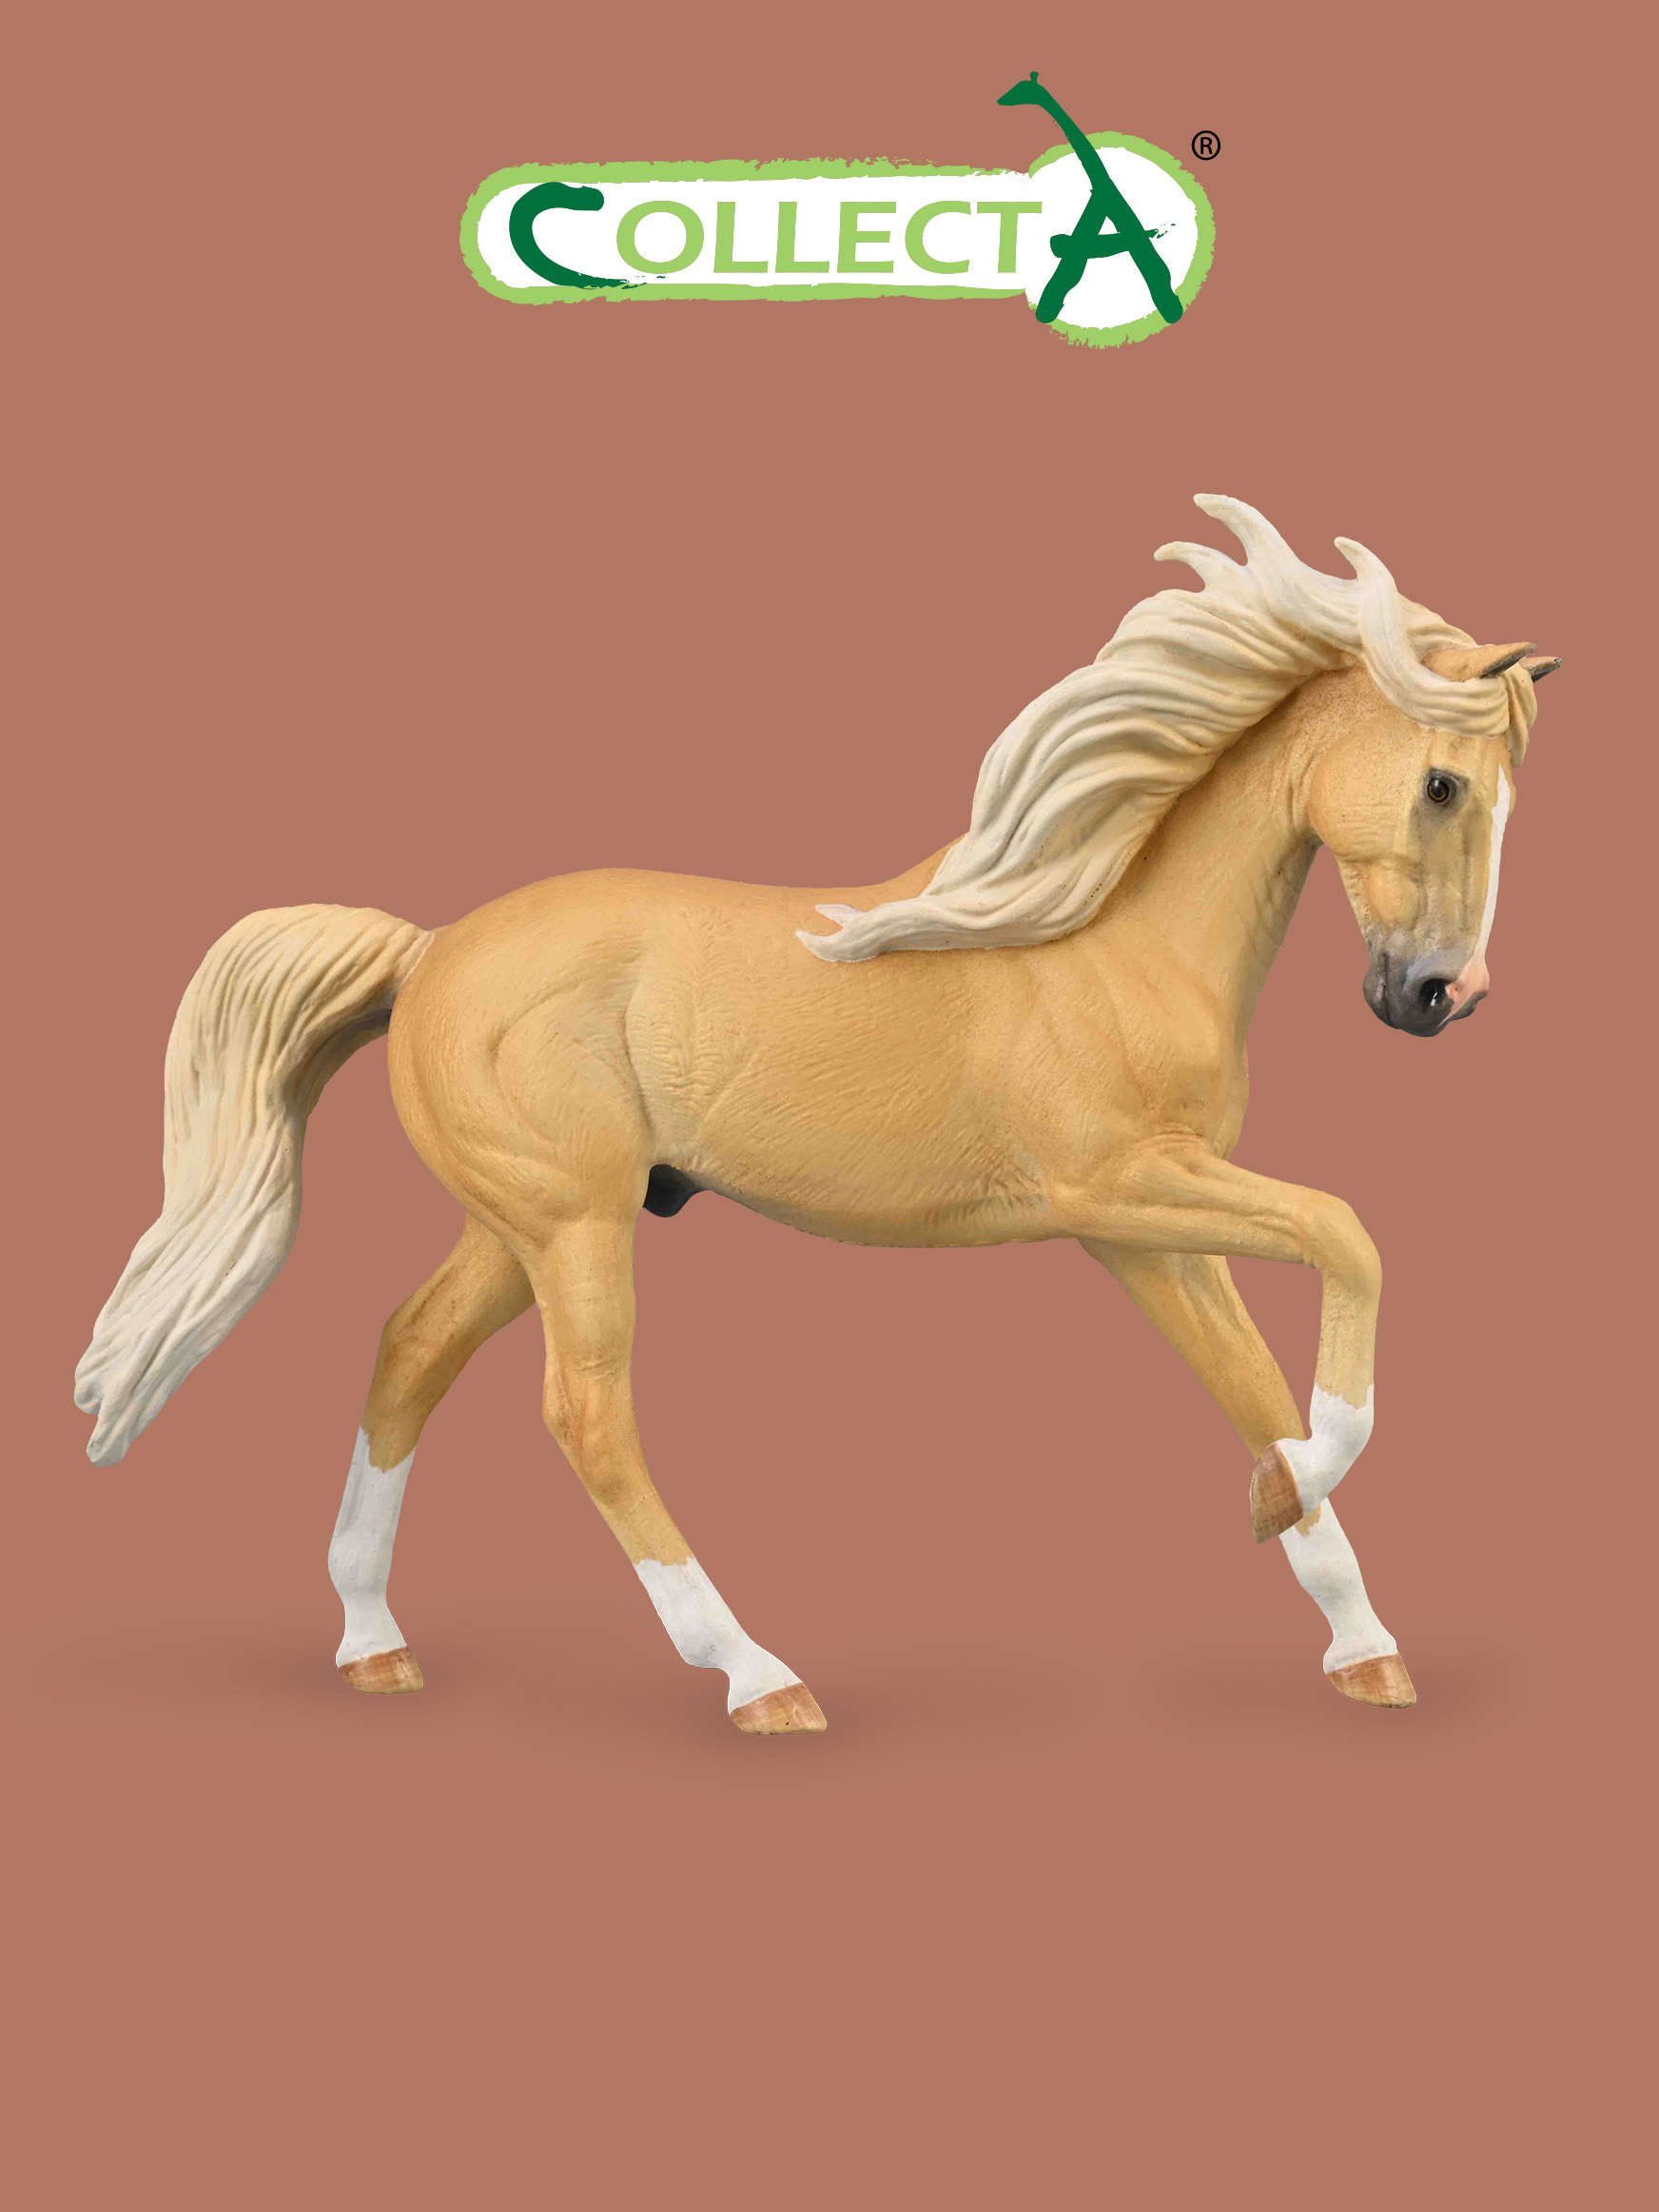 Фигурка Collecta животного Лошадь Андалузский жеребец - Паломино жеребец морган фигурка лошади